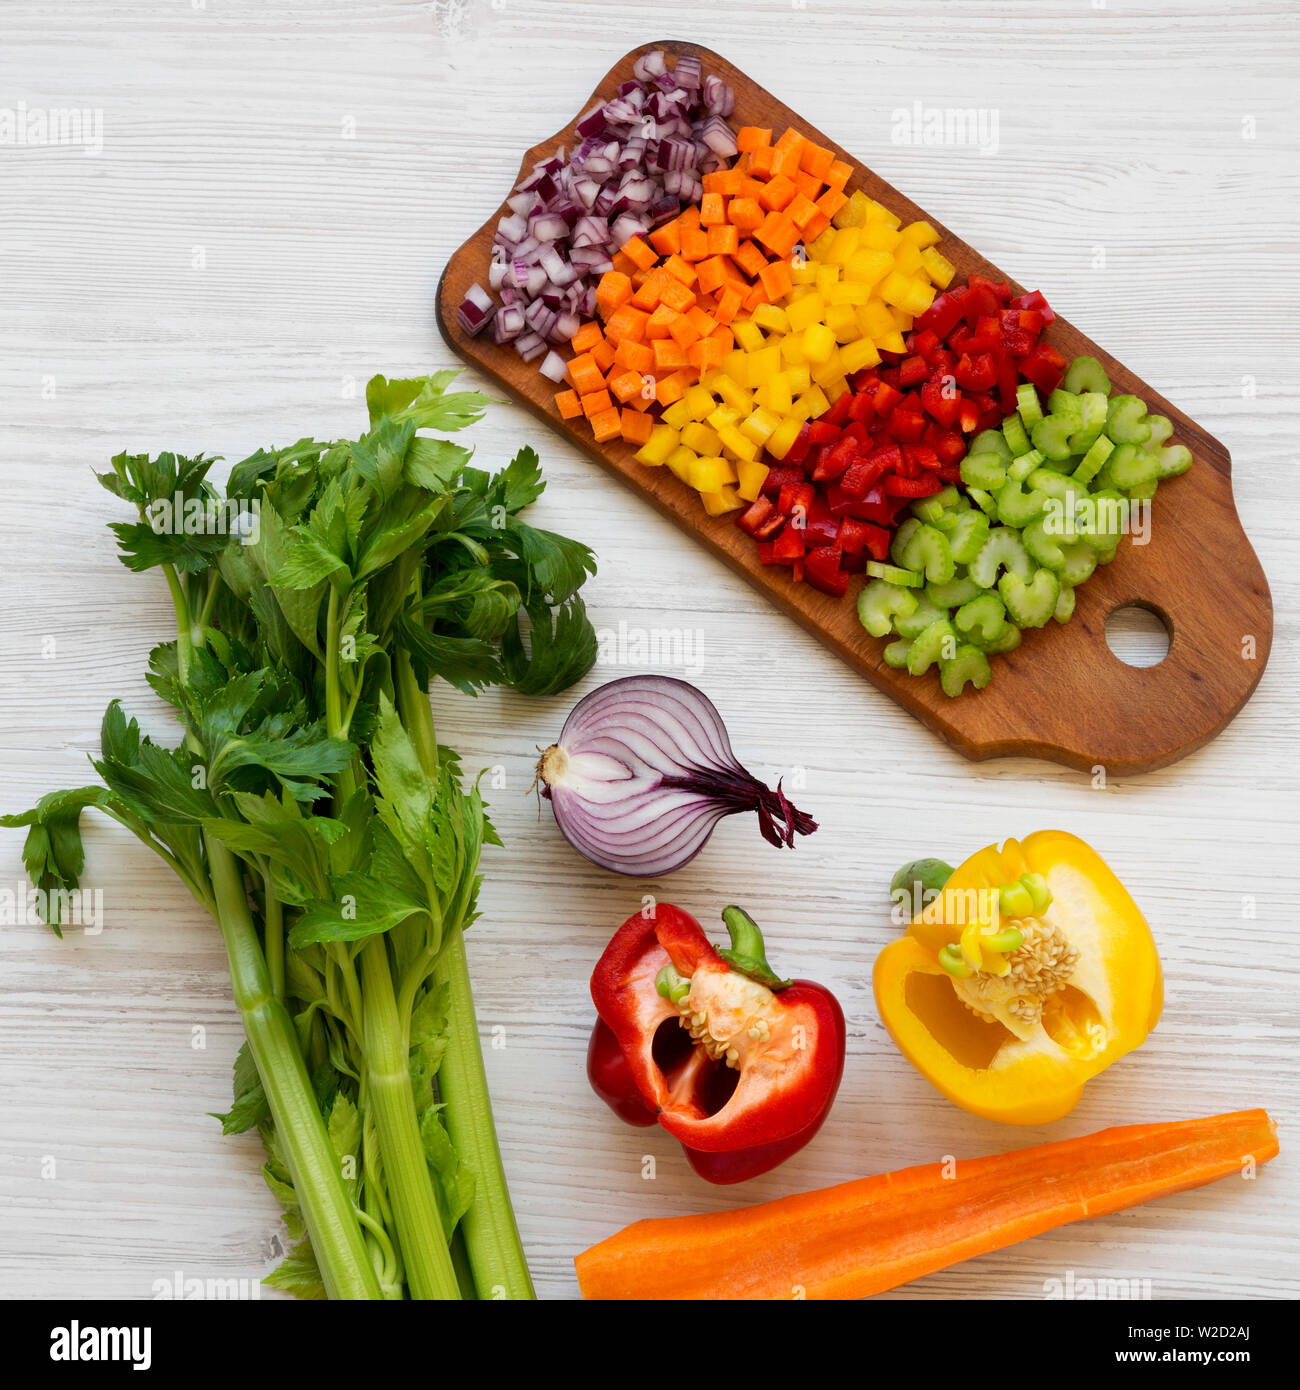 Da sopra, un trito di verdure fresche (carota, sedano, cipolla rossa, peperoni rossi e gialli) disposti sul bordo di taglio su un bianco sullo sfondo di legno. Overh Foto Stock